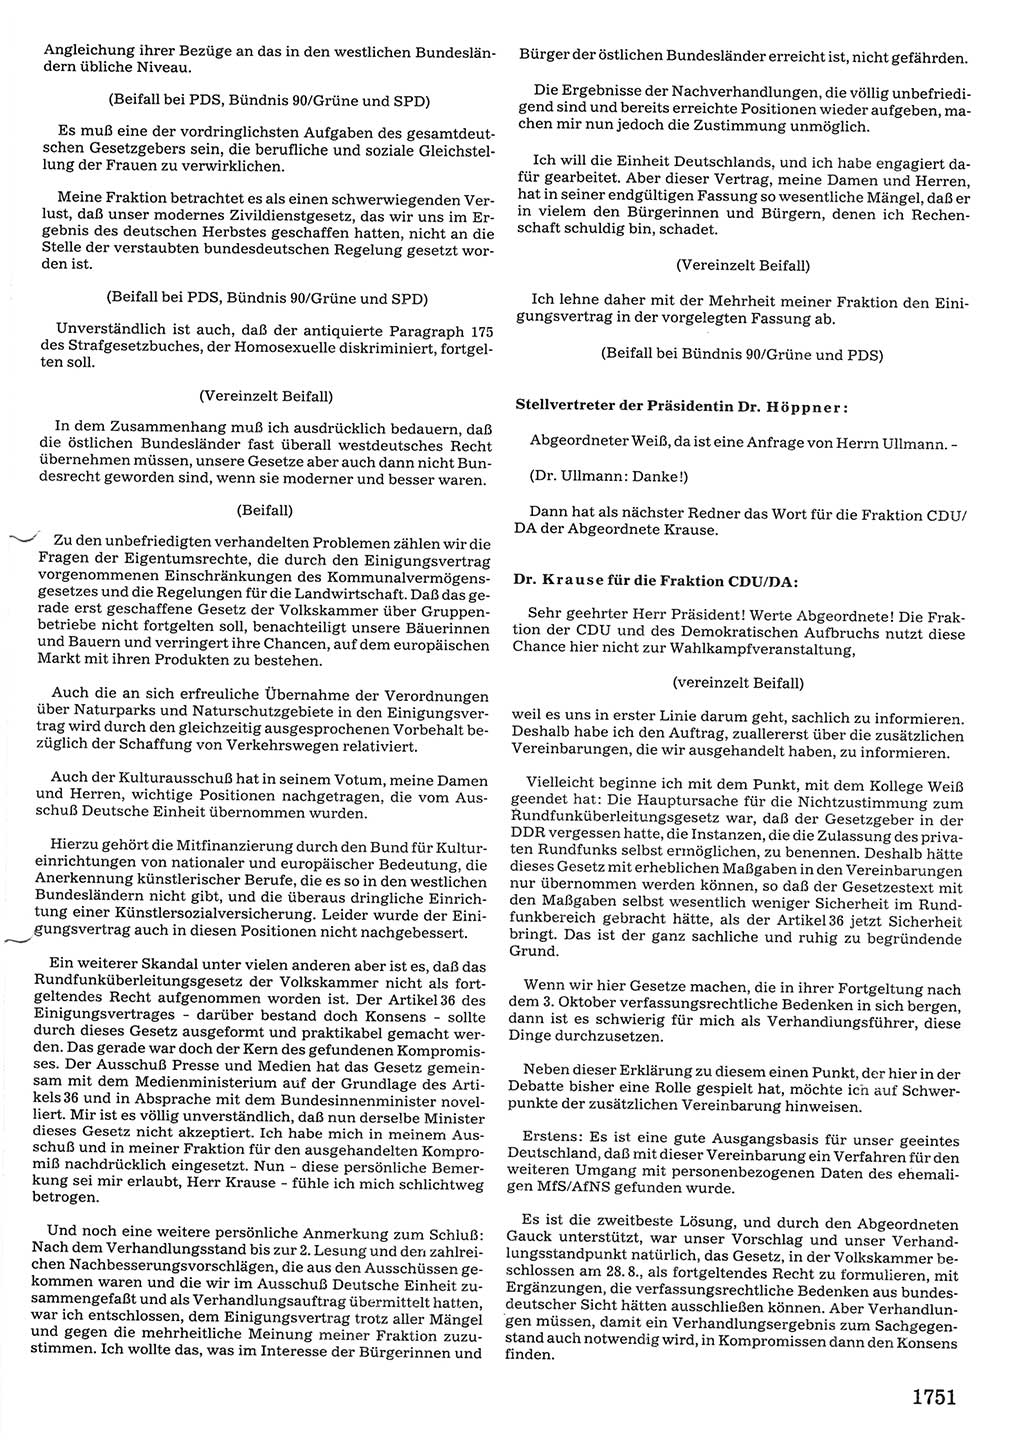 Tagungen der Volkskammer (VK) der Deutschen Demokratischen Republik (DDR), 10. Wahlperiode 1990, Seite 1751 (VK. DDR 10. WP. 1990, Prot. Tg. 1-38, 5.4.-2.10.1990, S. 1751)